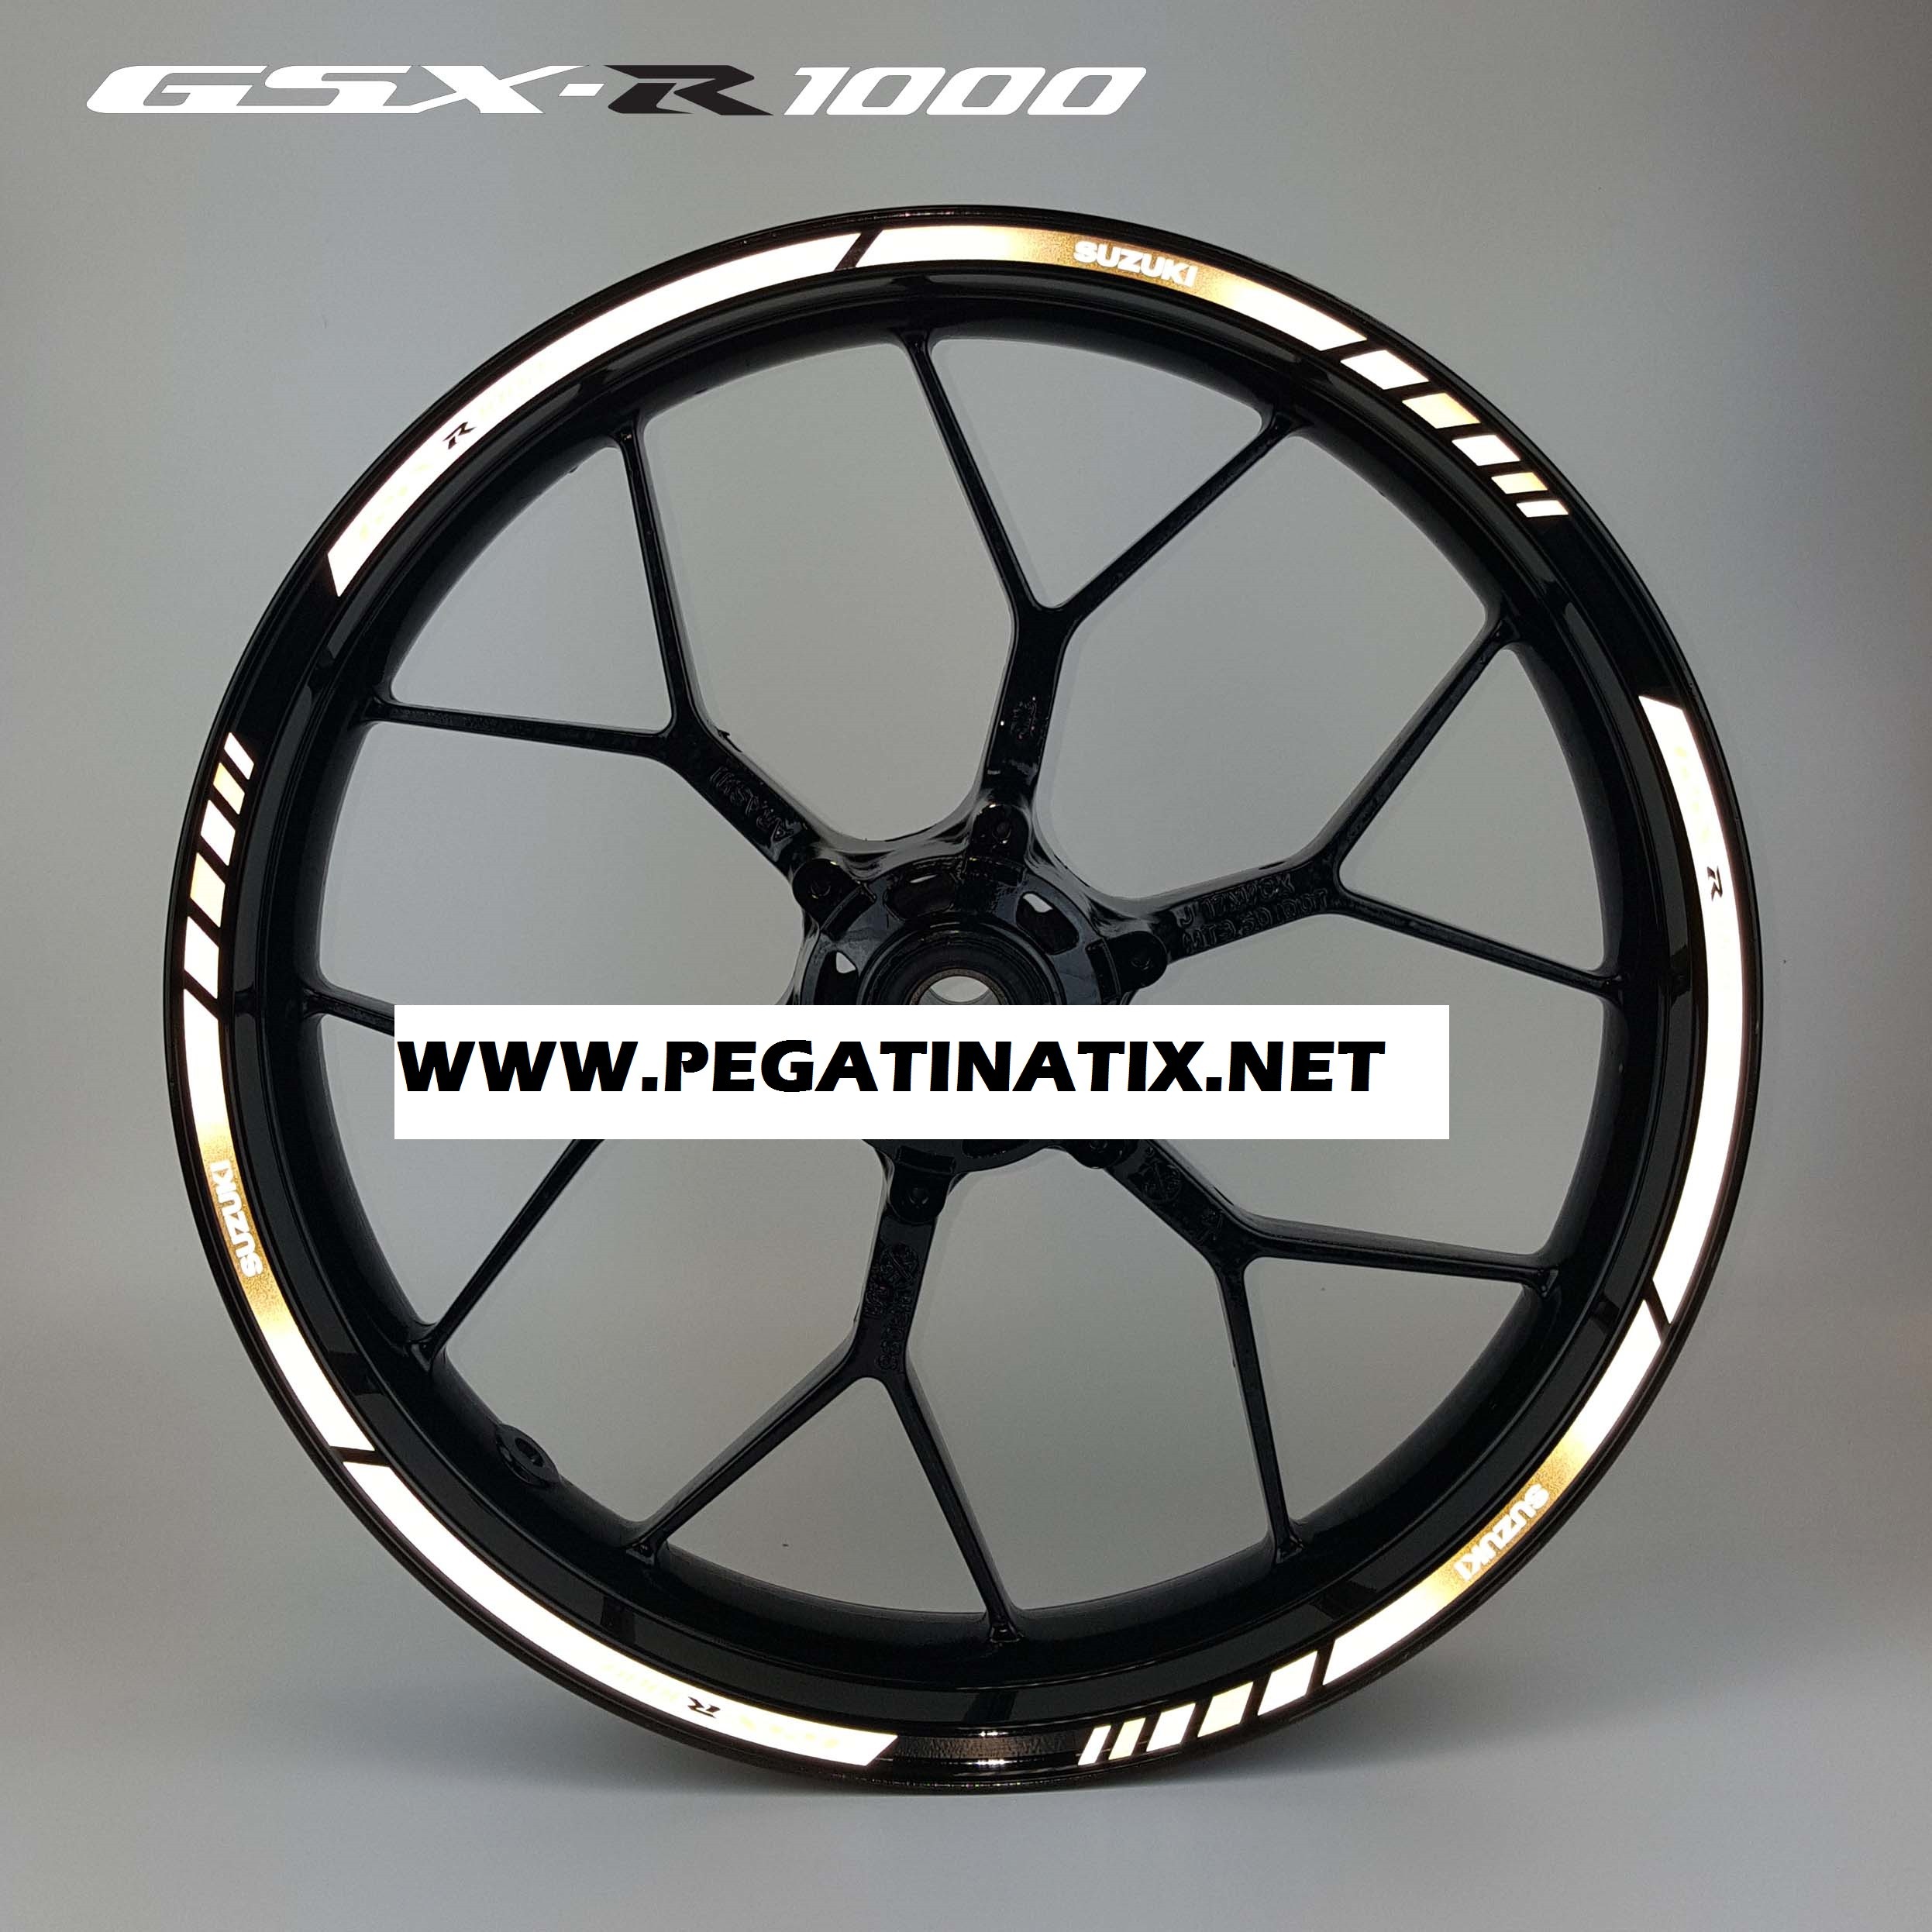 GSX-R 1000 motorcycle wheel decals rim stickers Laminated set suzuki gsxr1000 